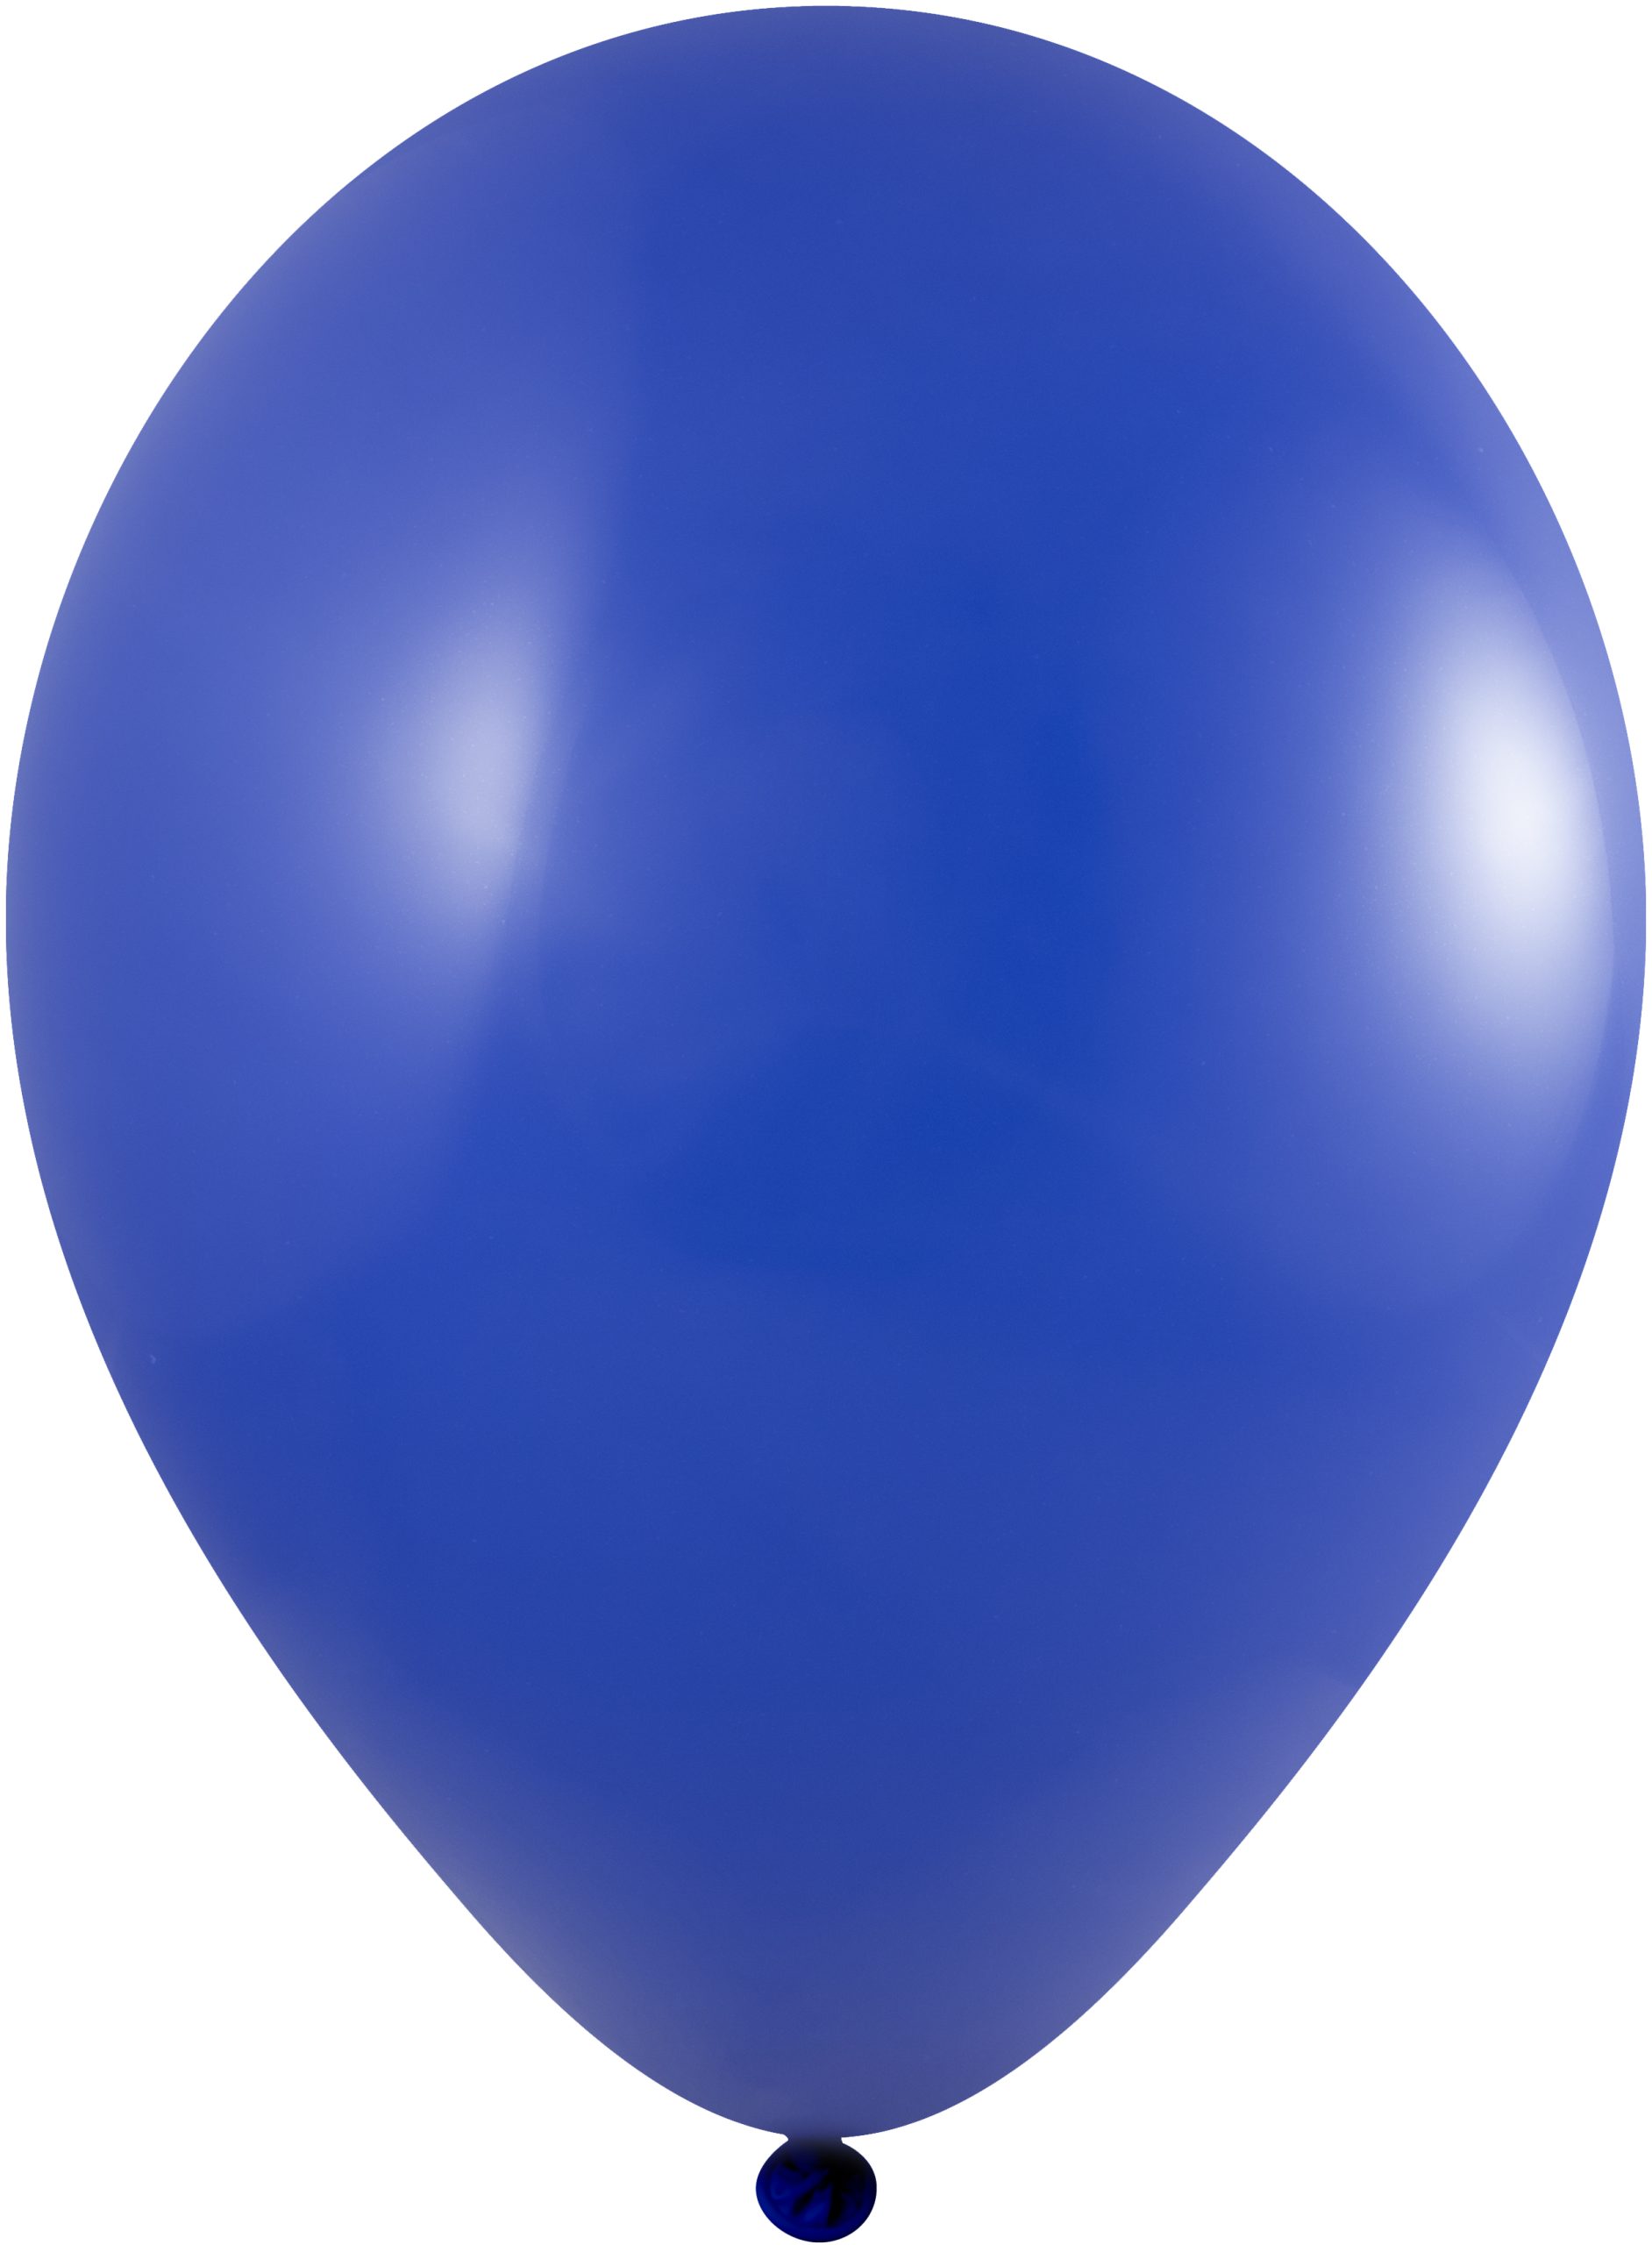 Ballonnen  - Ø 33 cm  